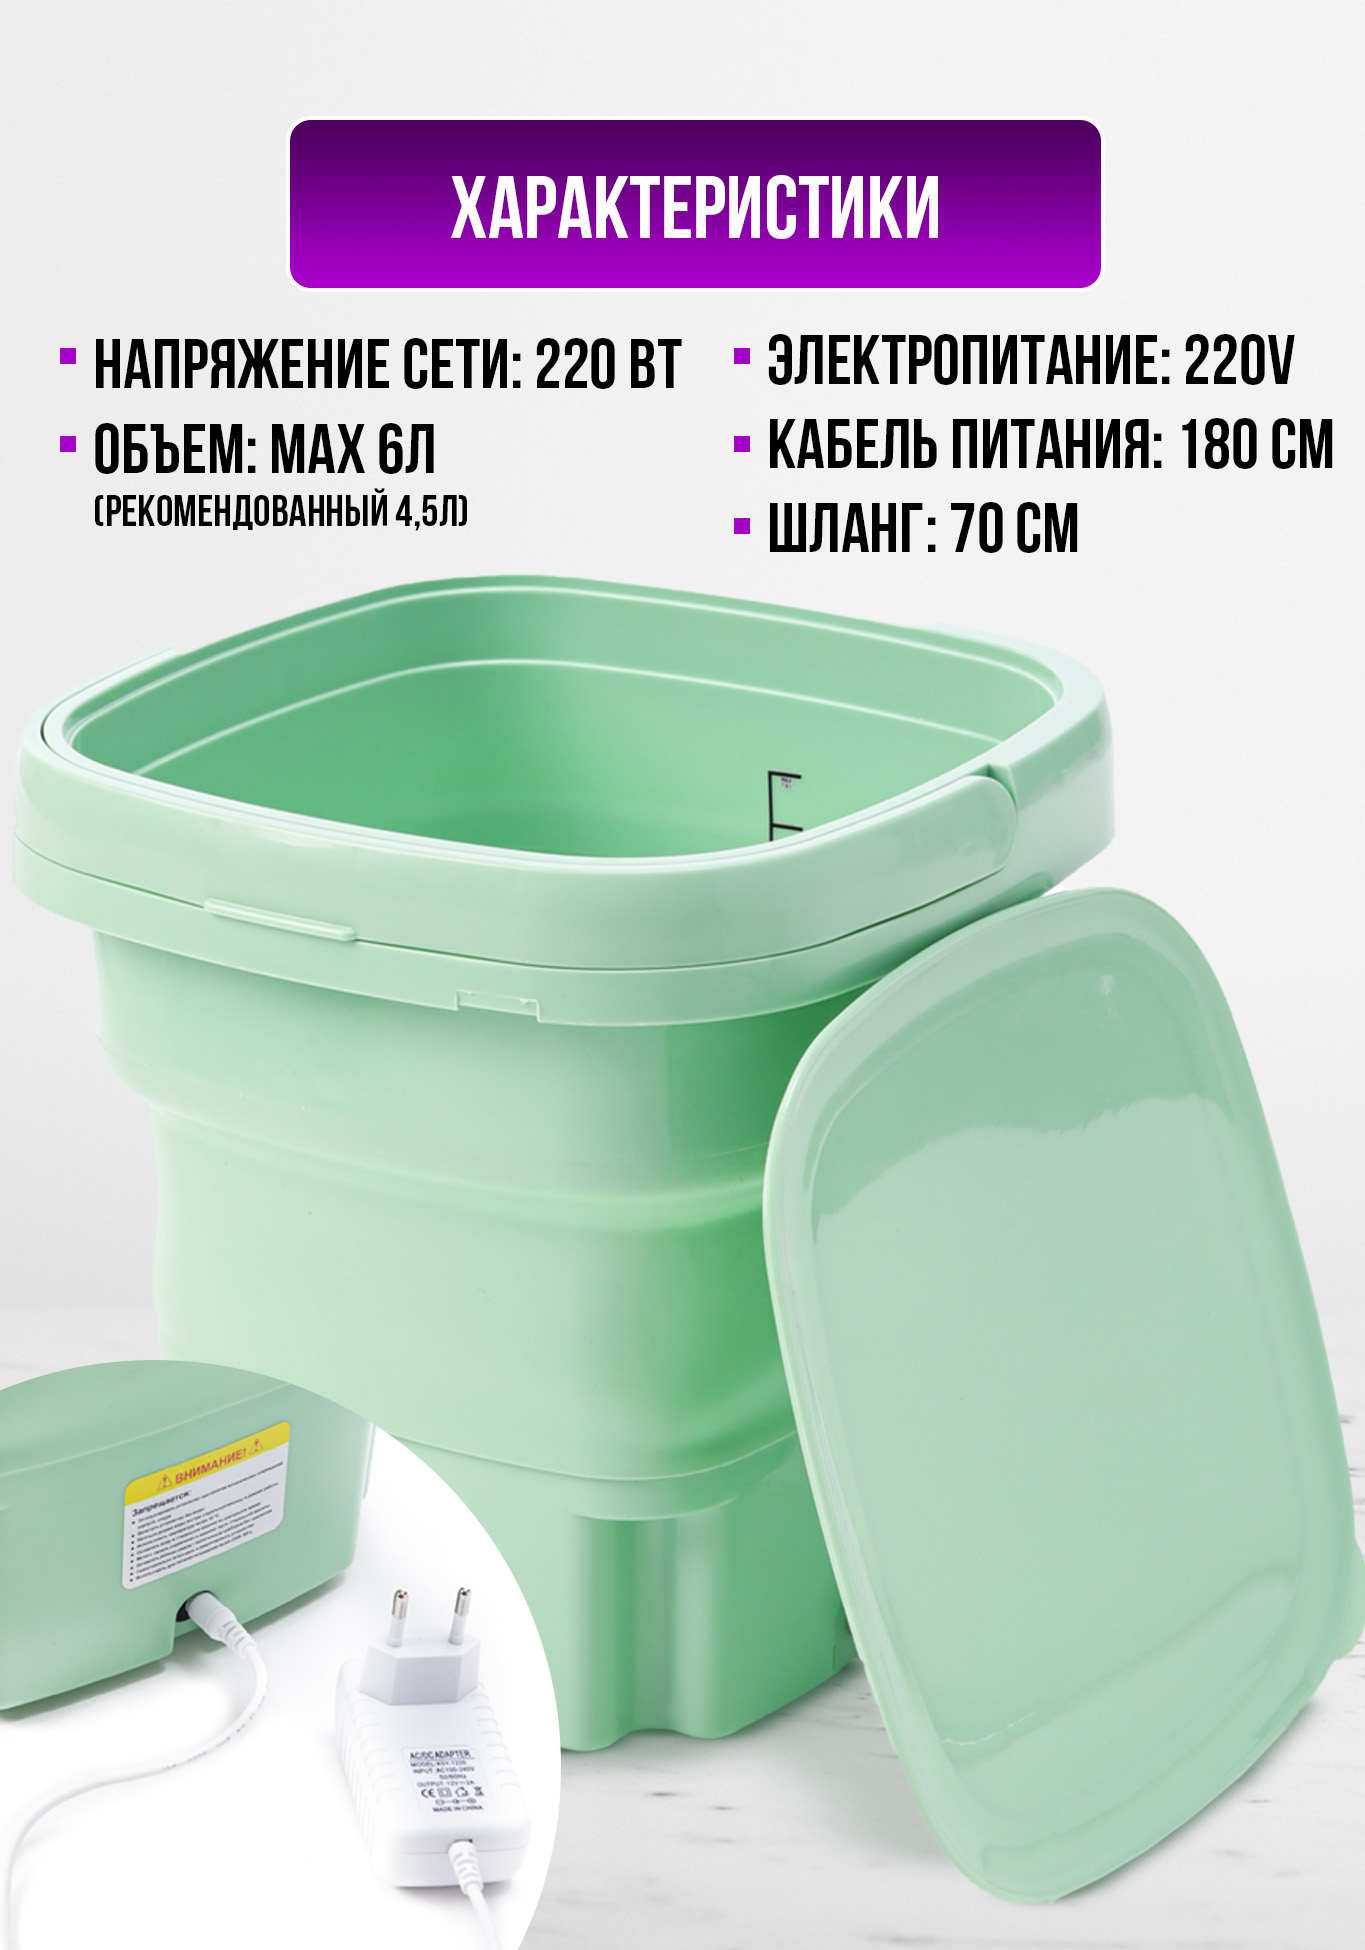 Складная стиральная машина "Лотос" Leomax, цвет зеленый - фото 8